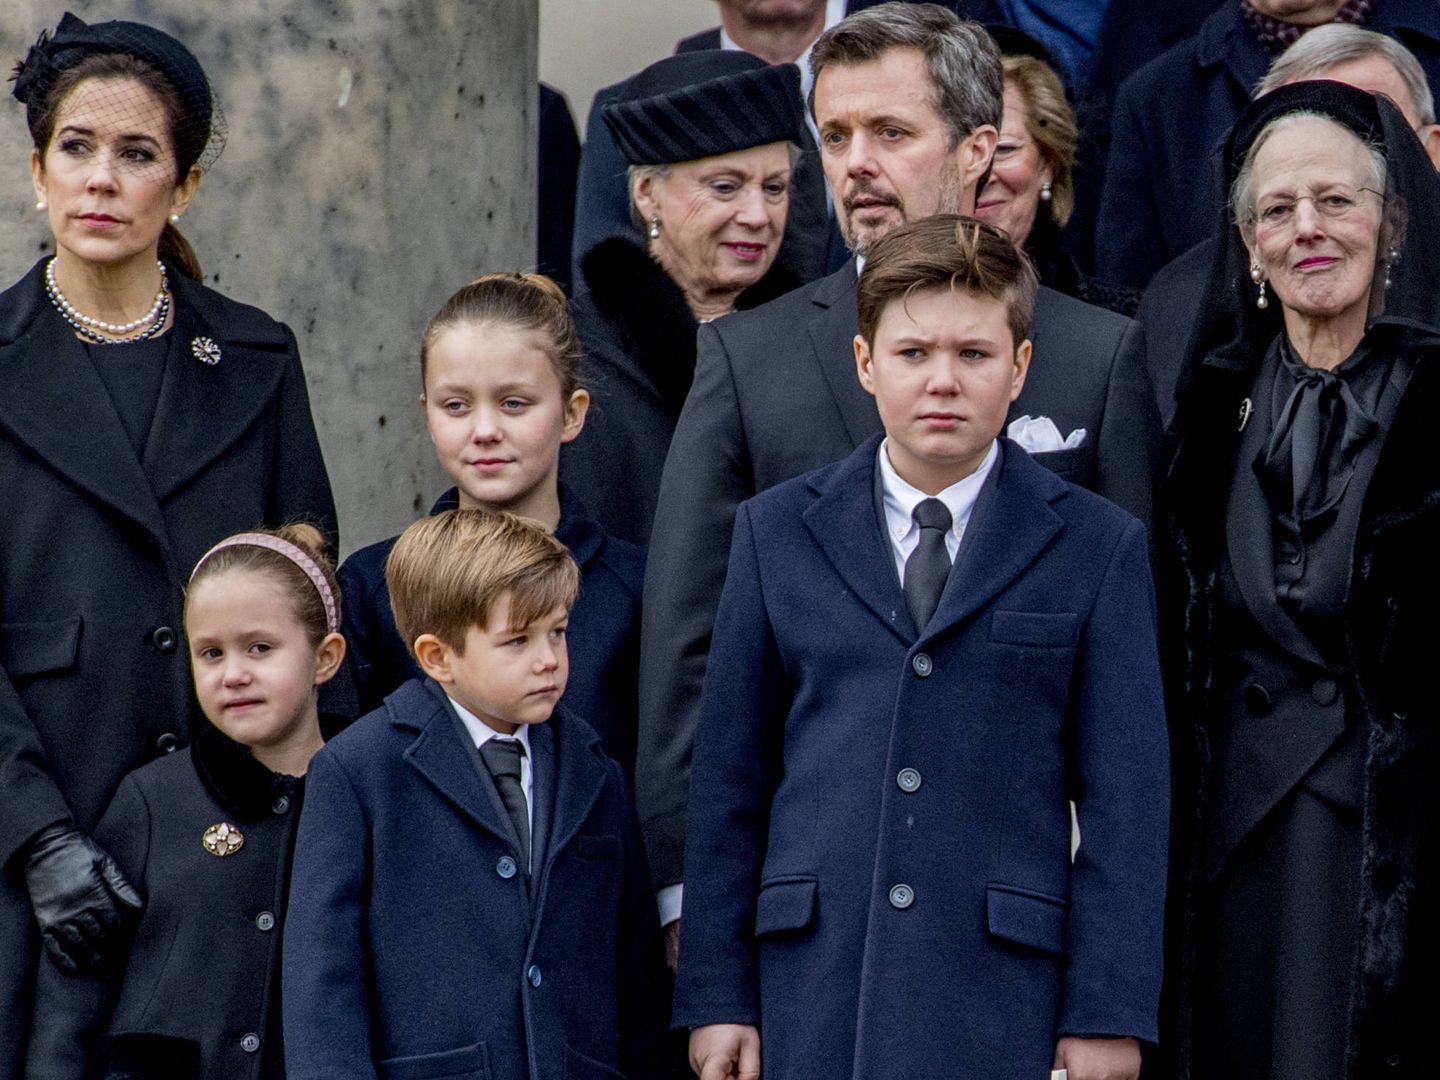 La familia real danesa, en el funeral del príncipe Henrik, el pasado 20 de febrero. (Gtres)